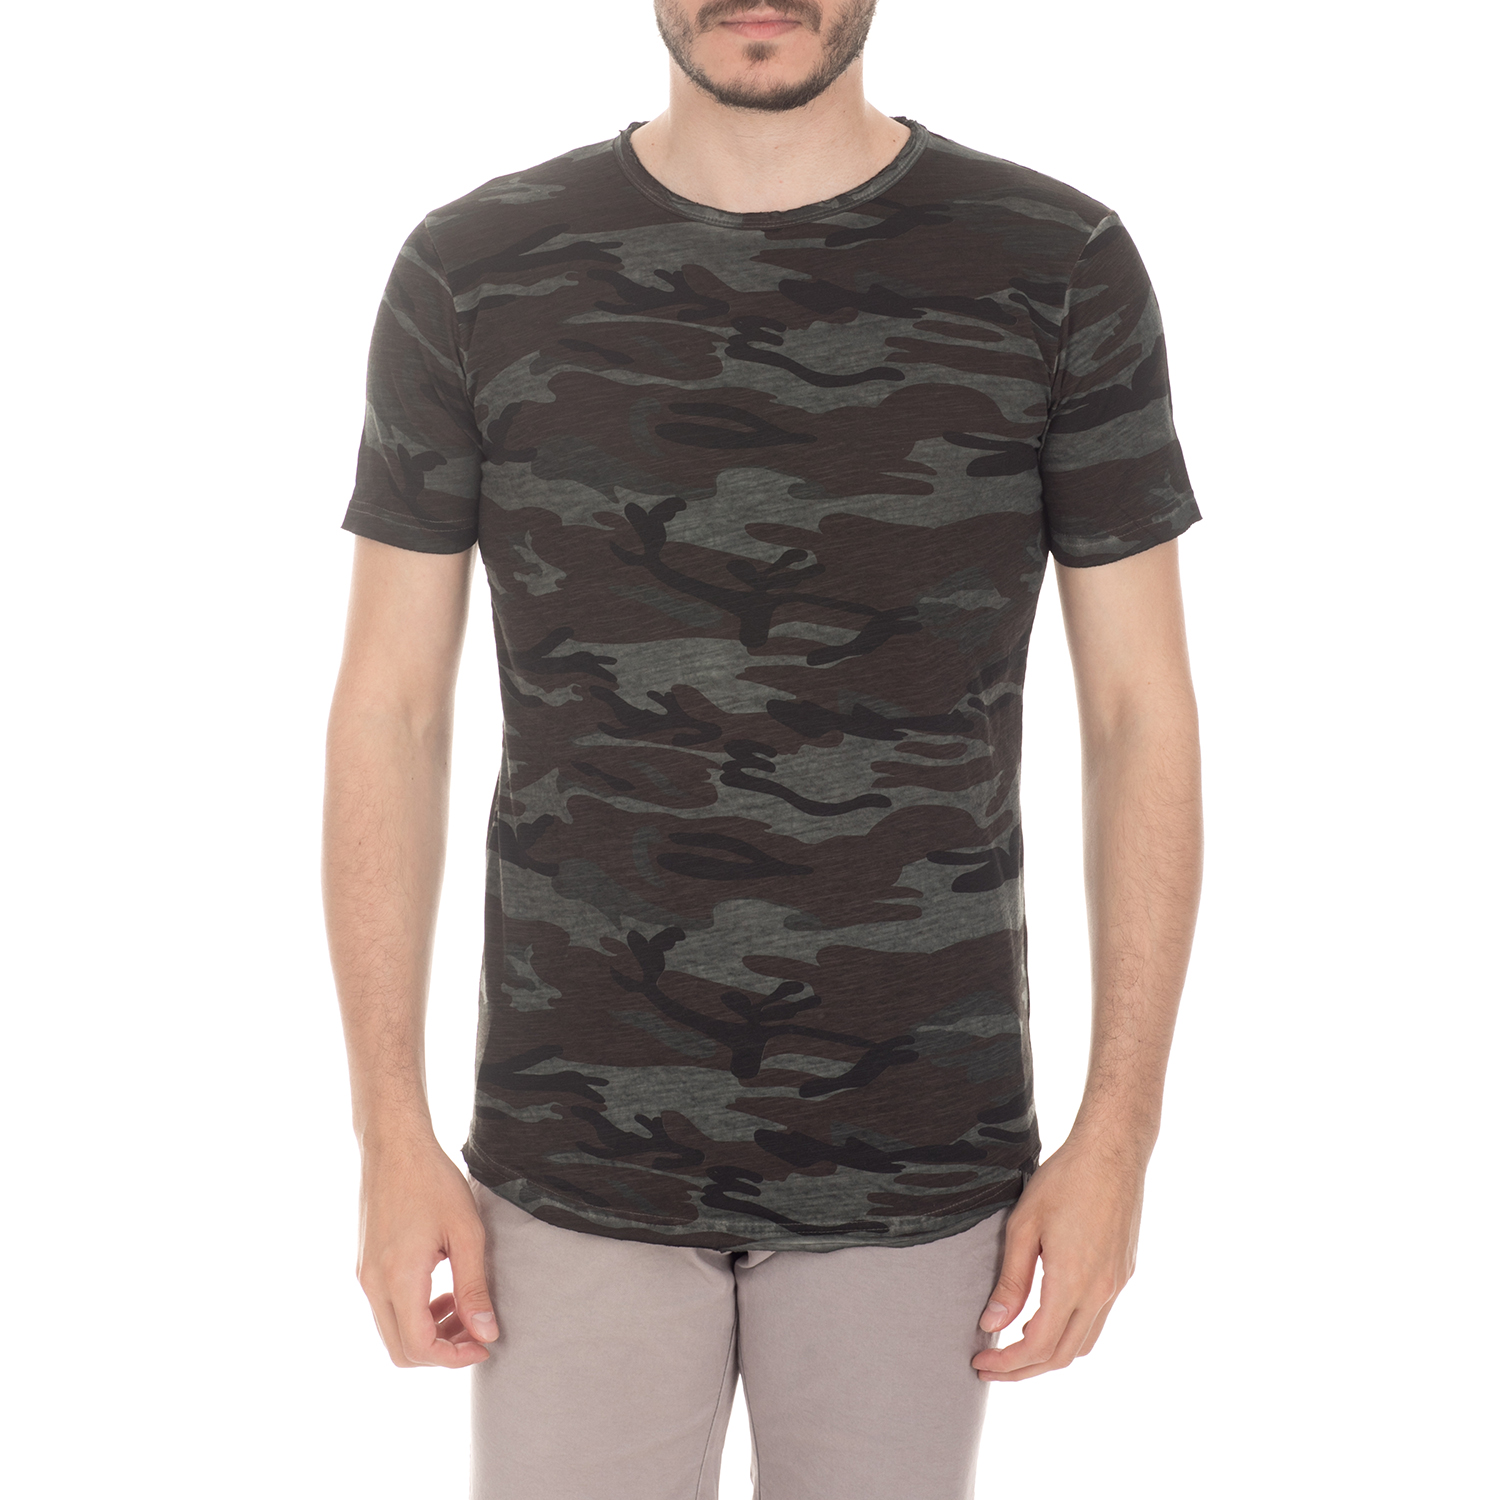 Ανδρικά/Ρούχα/Μπλούζες/Κοντομάνικες BATTERY - Ανδρική μπλούζα BATTERY μαύρη